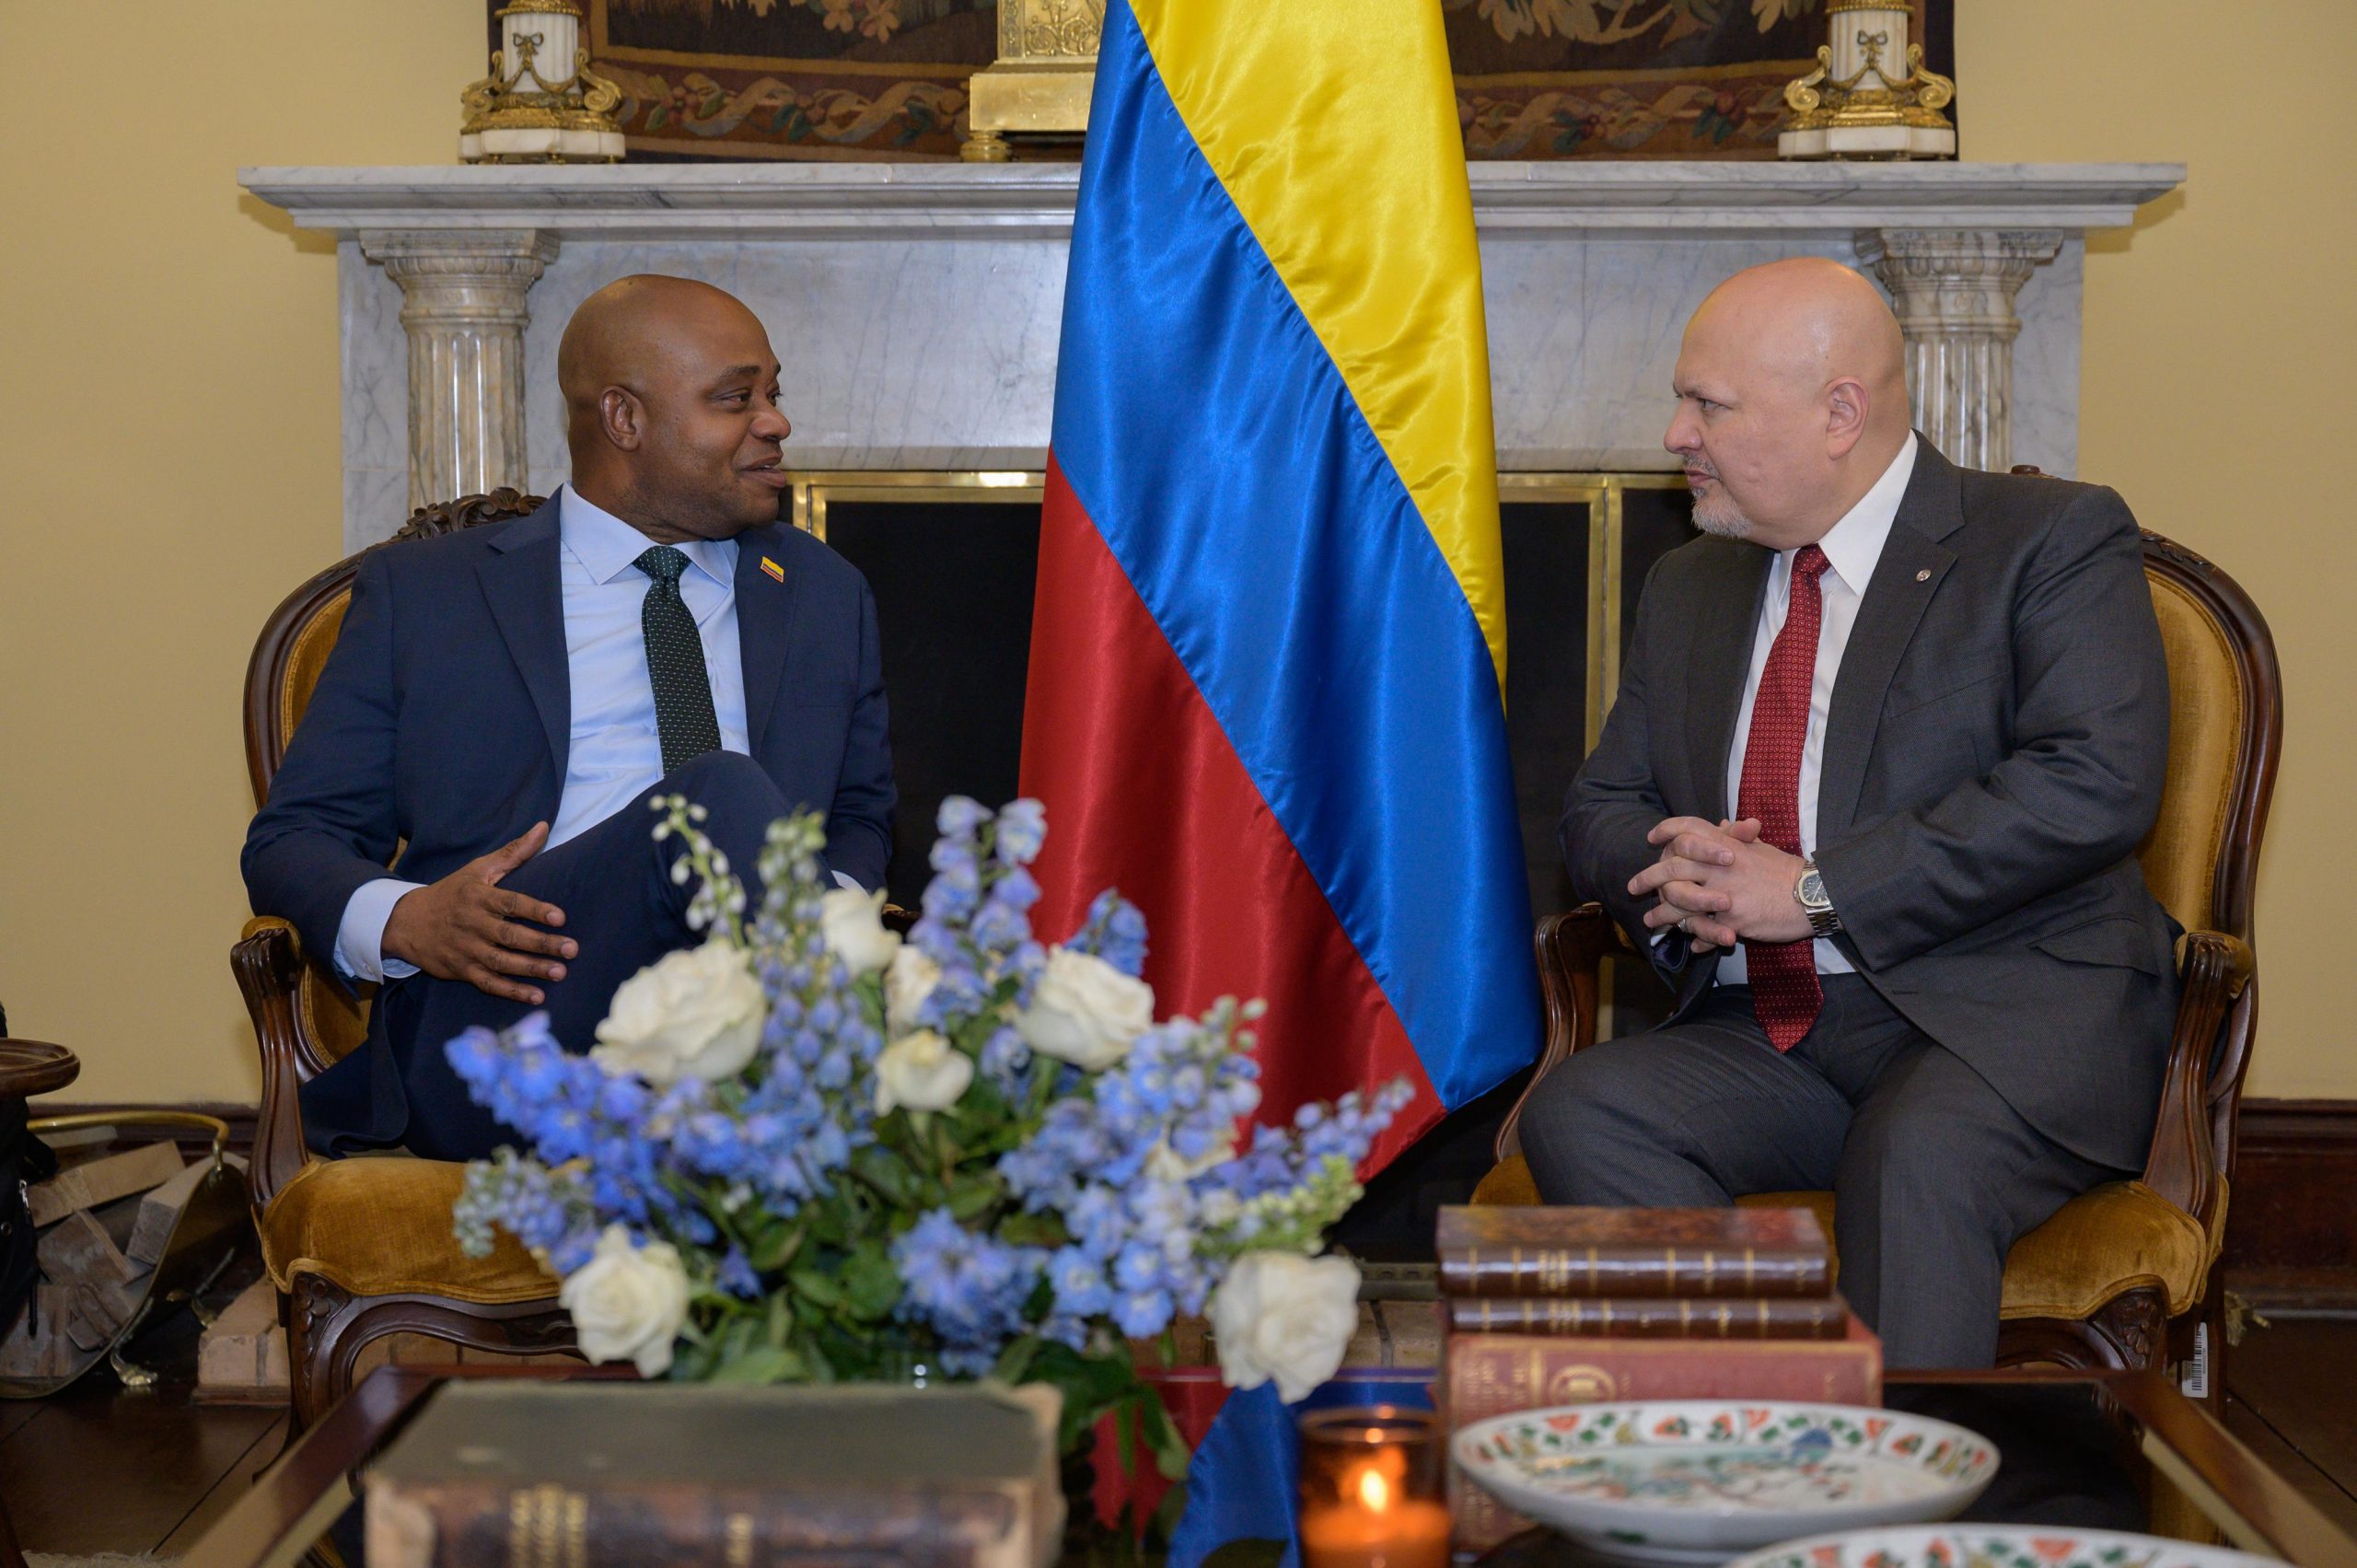 El fiscal Karim Khan de visita en Colombia y el canciller encargado Luis Gilberto Murillo. Foto Cancillería